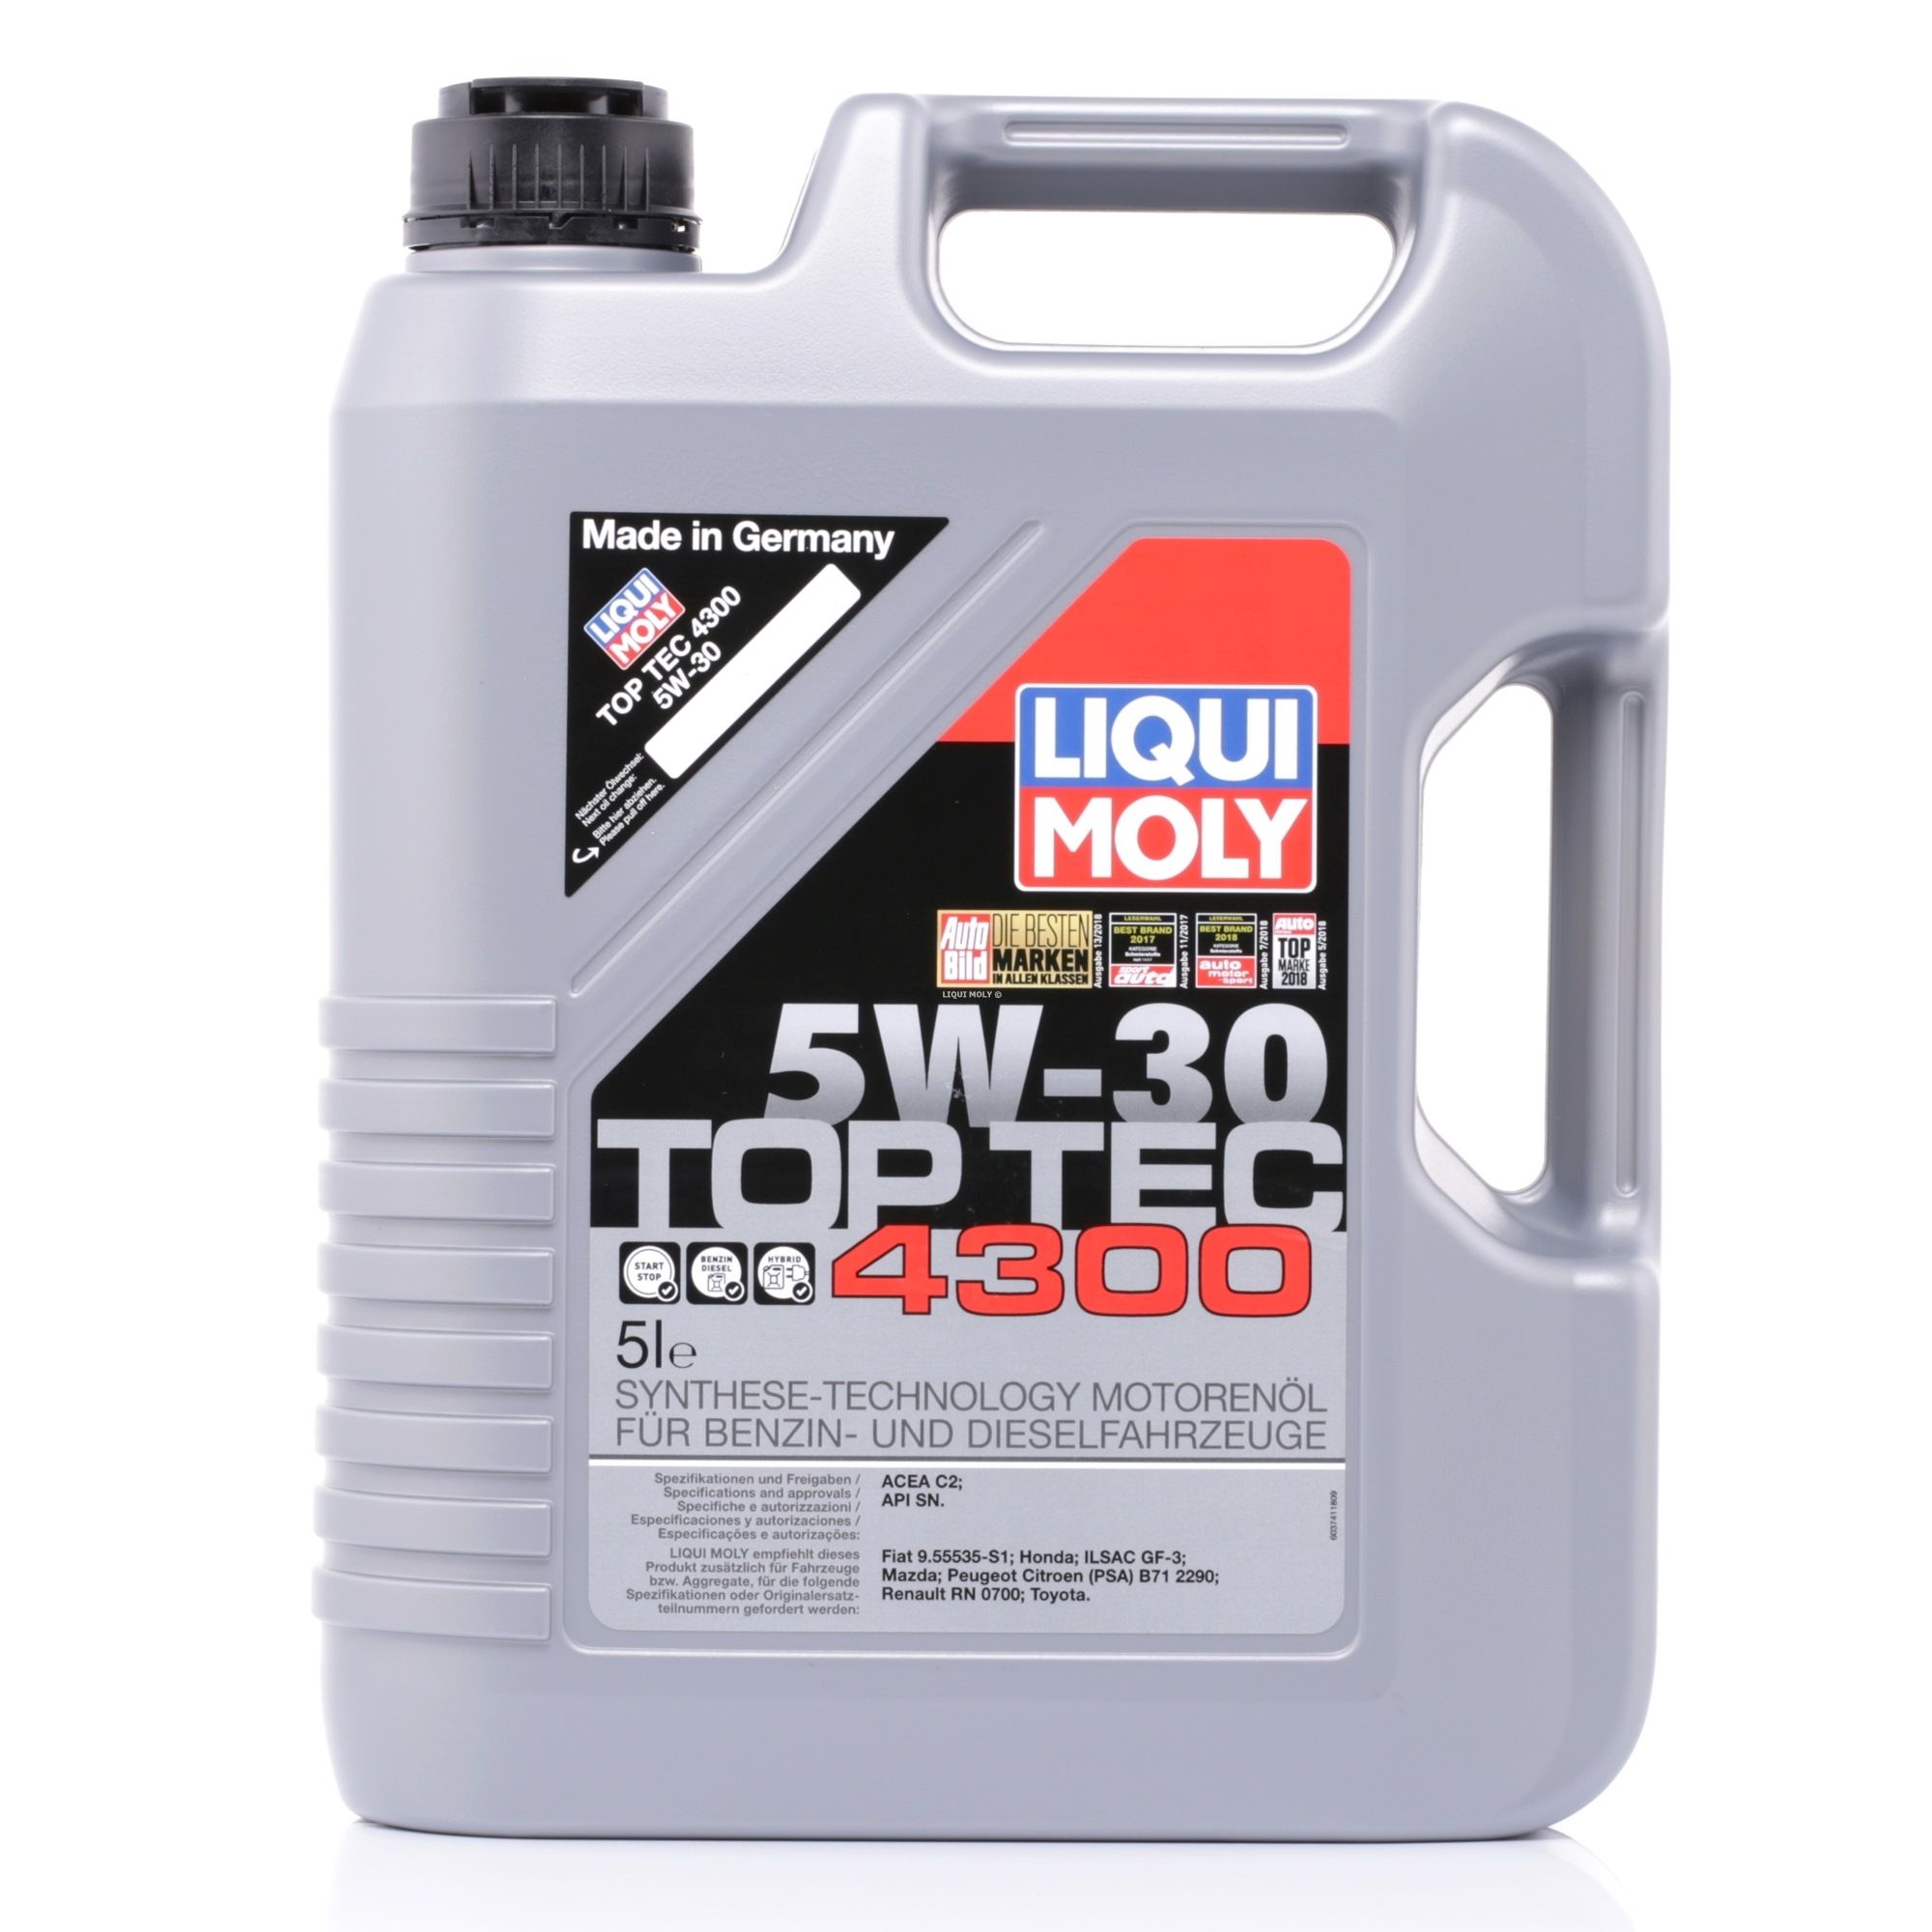 LIQUI MOLY Top Tec, 4300 2324 Engine oil 5W-30, 5l, Synthetic Oil